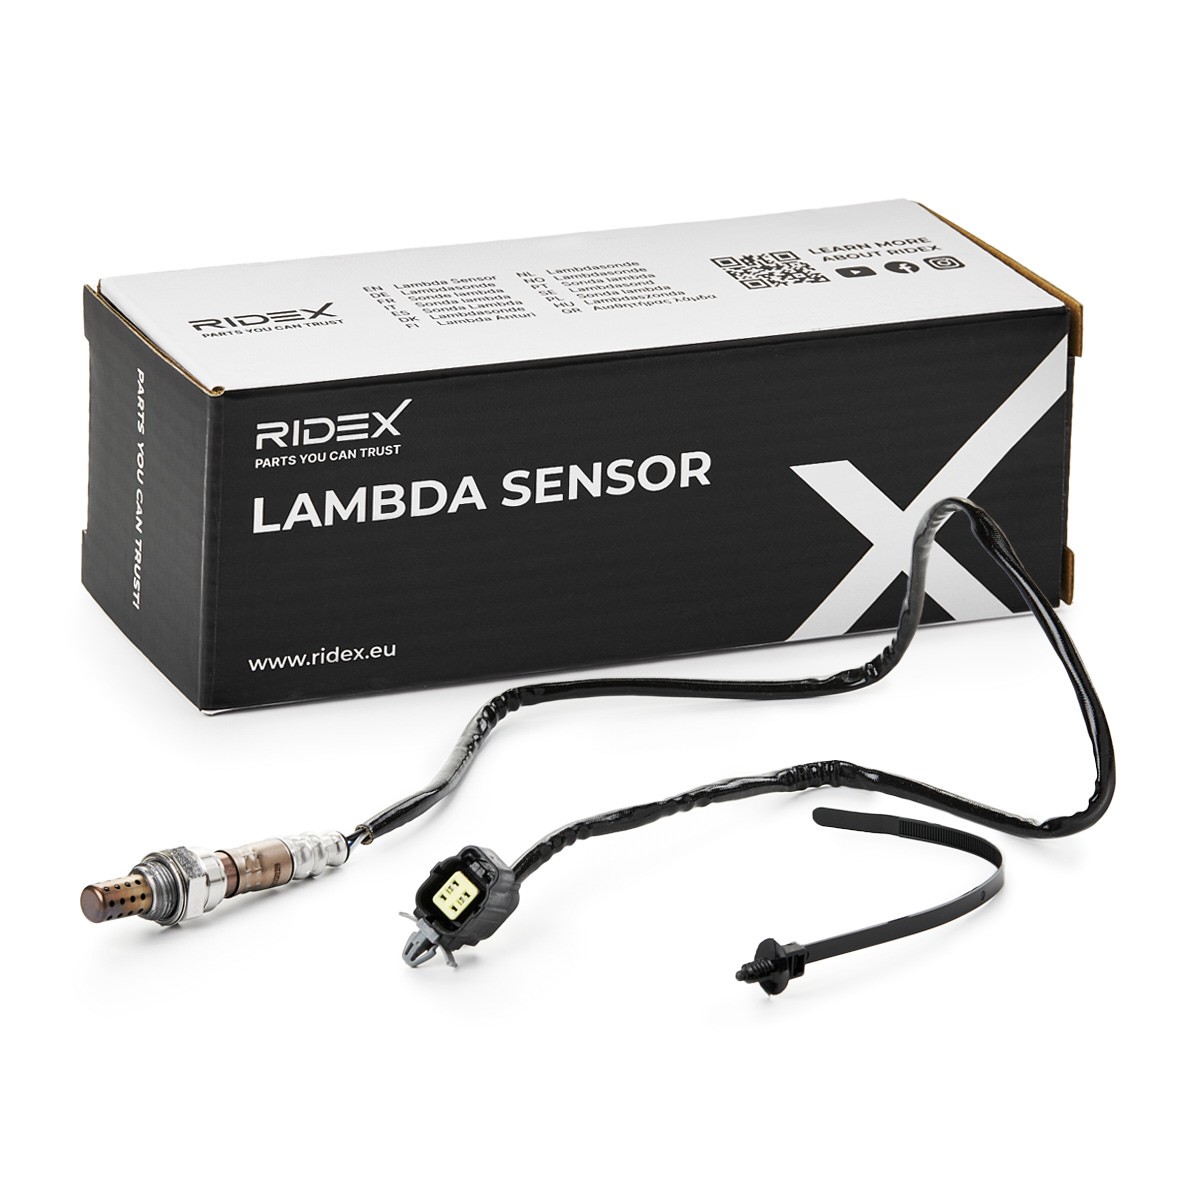 RIDEX 3922L0746 Lambda sensor Diagnostic Probe, Regulating Probe